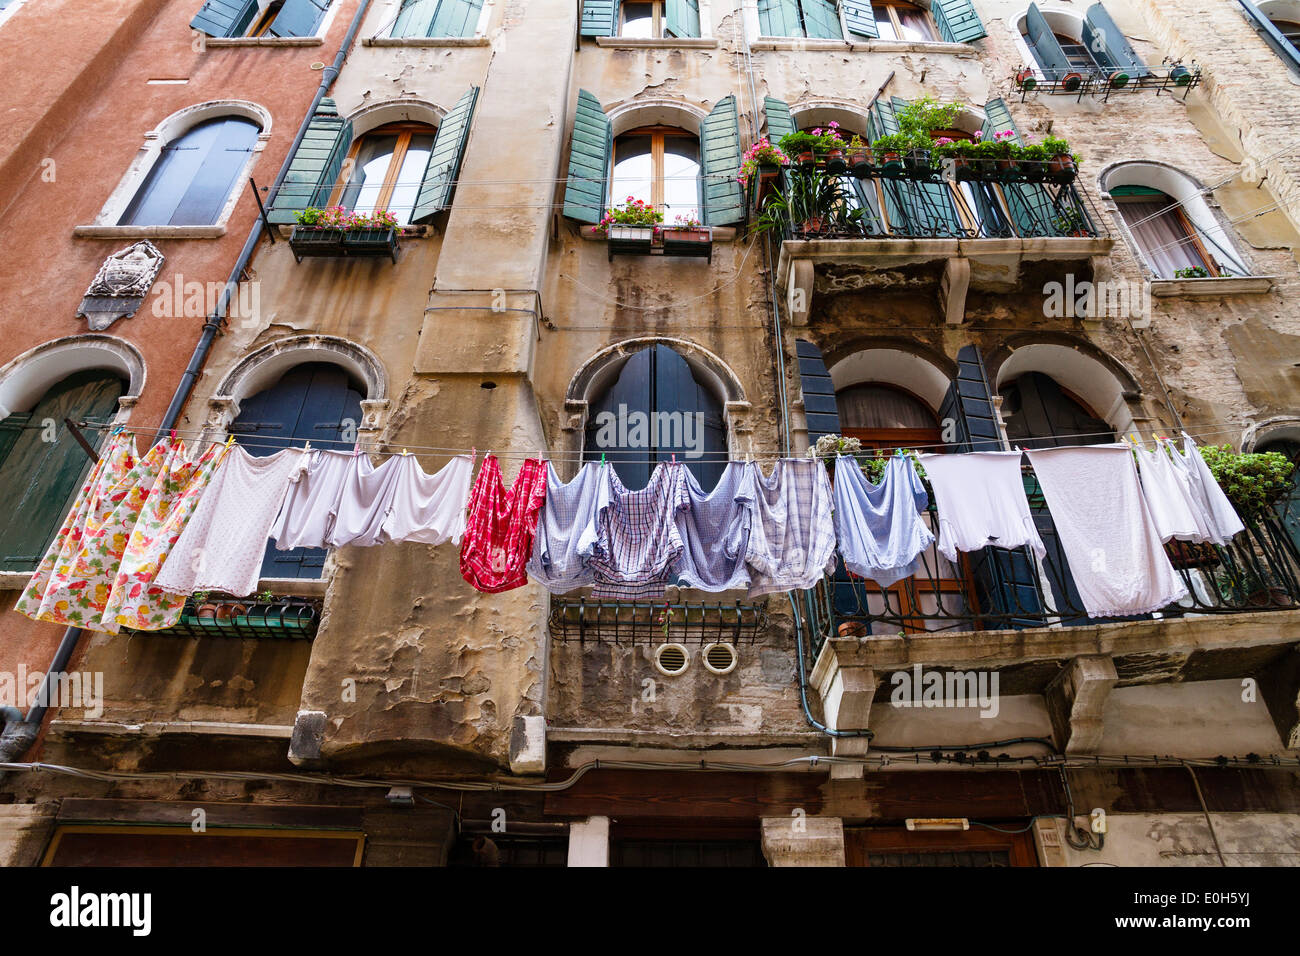 La facciata della casa con lavanderia, Venezia, Veneto, Italia, Europa Foto Stock